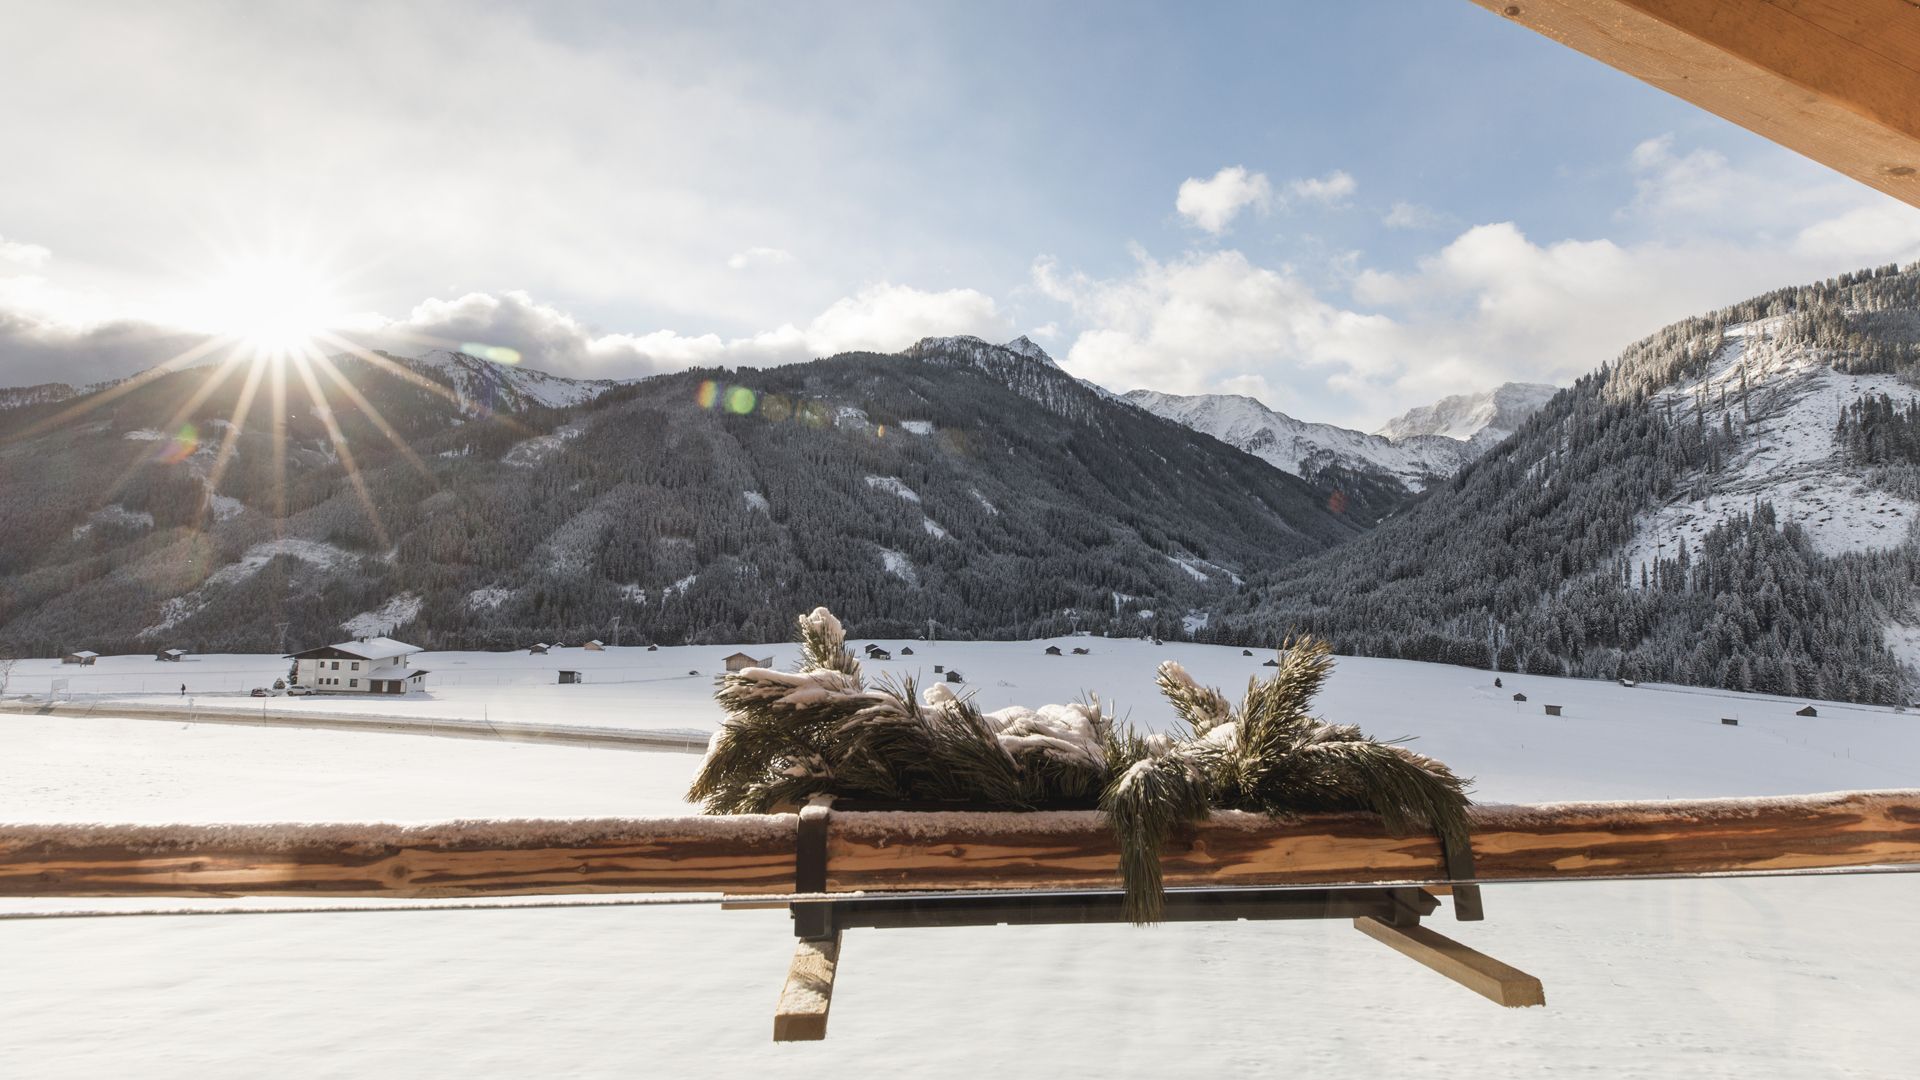 Schneevergnügen für Klein und Groß! Wintererlebnis in Osttirol im Familotel Almfamilyhotel Scherer!